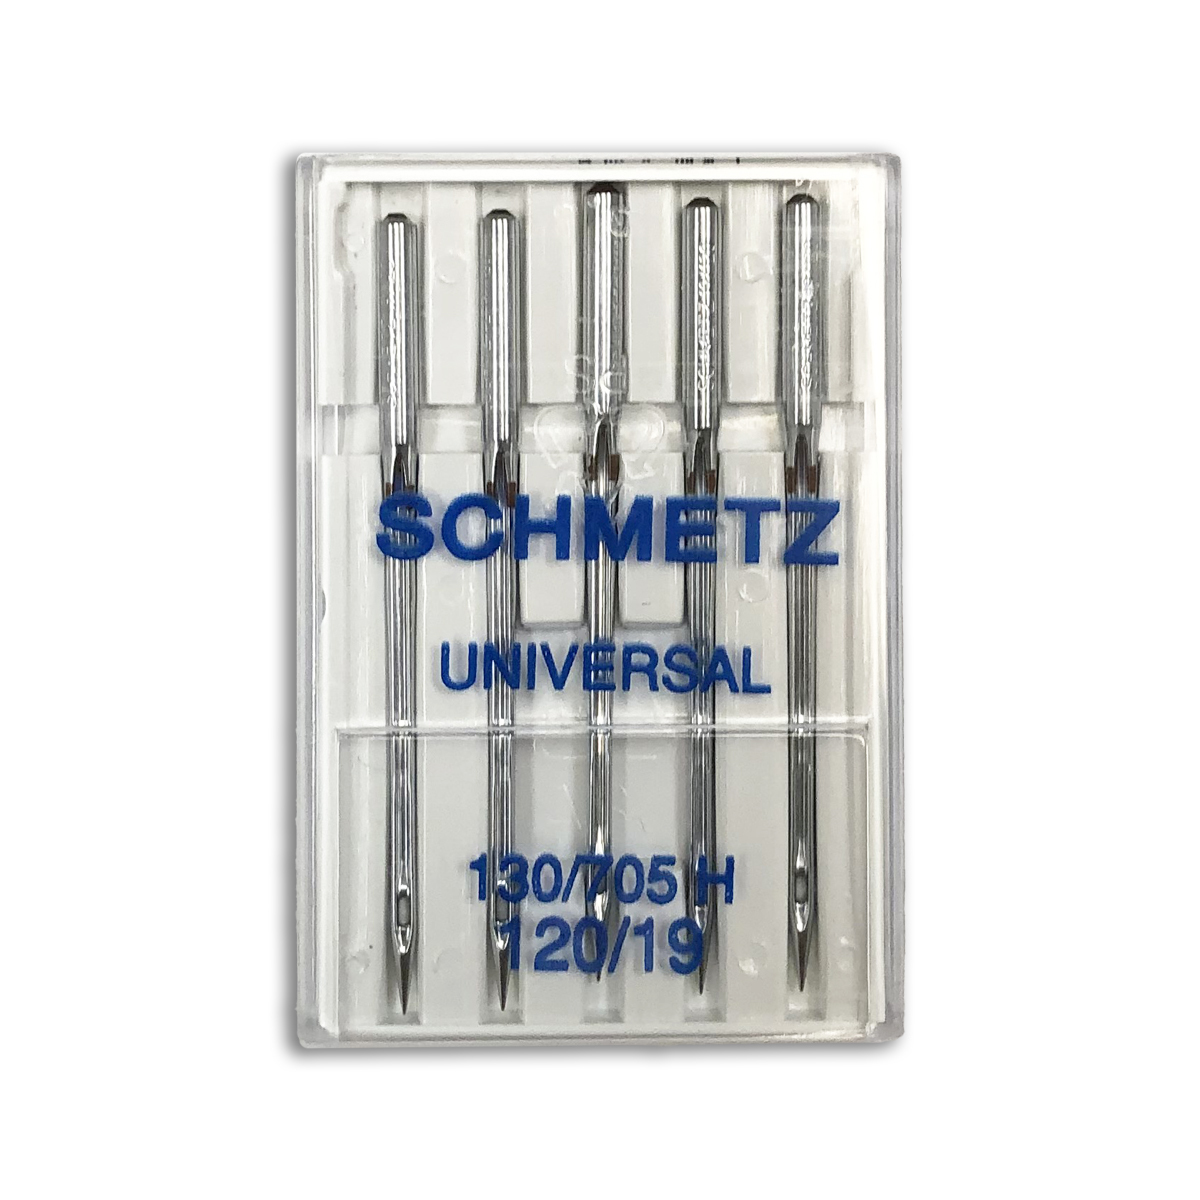 25 Schmetz Universal Sewing Machine Needles 130/705H 15x1H